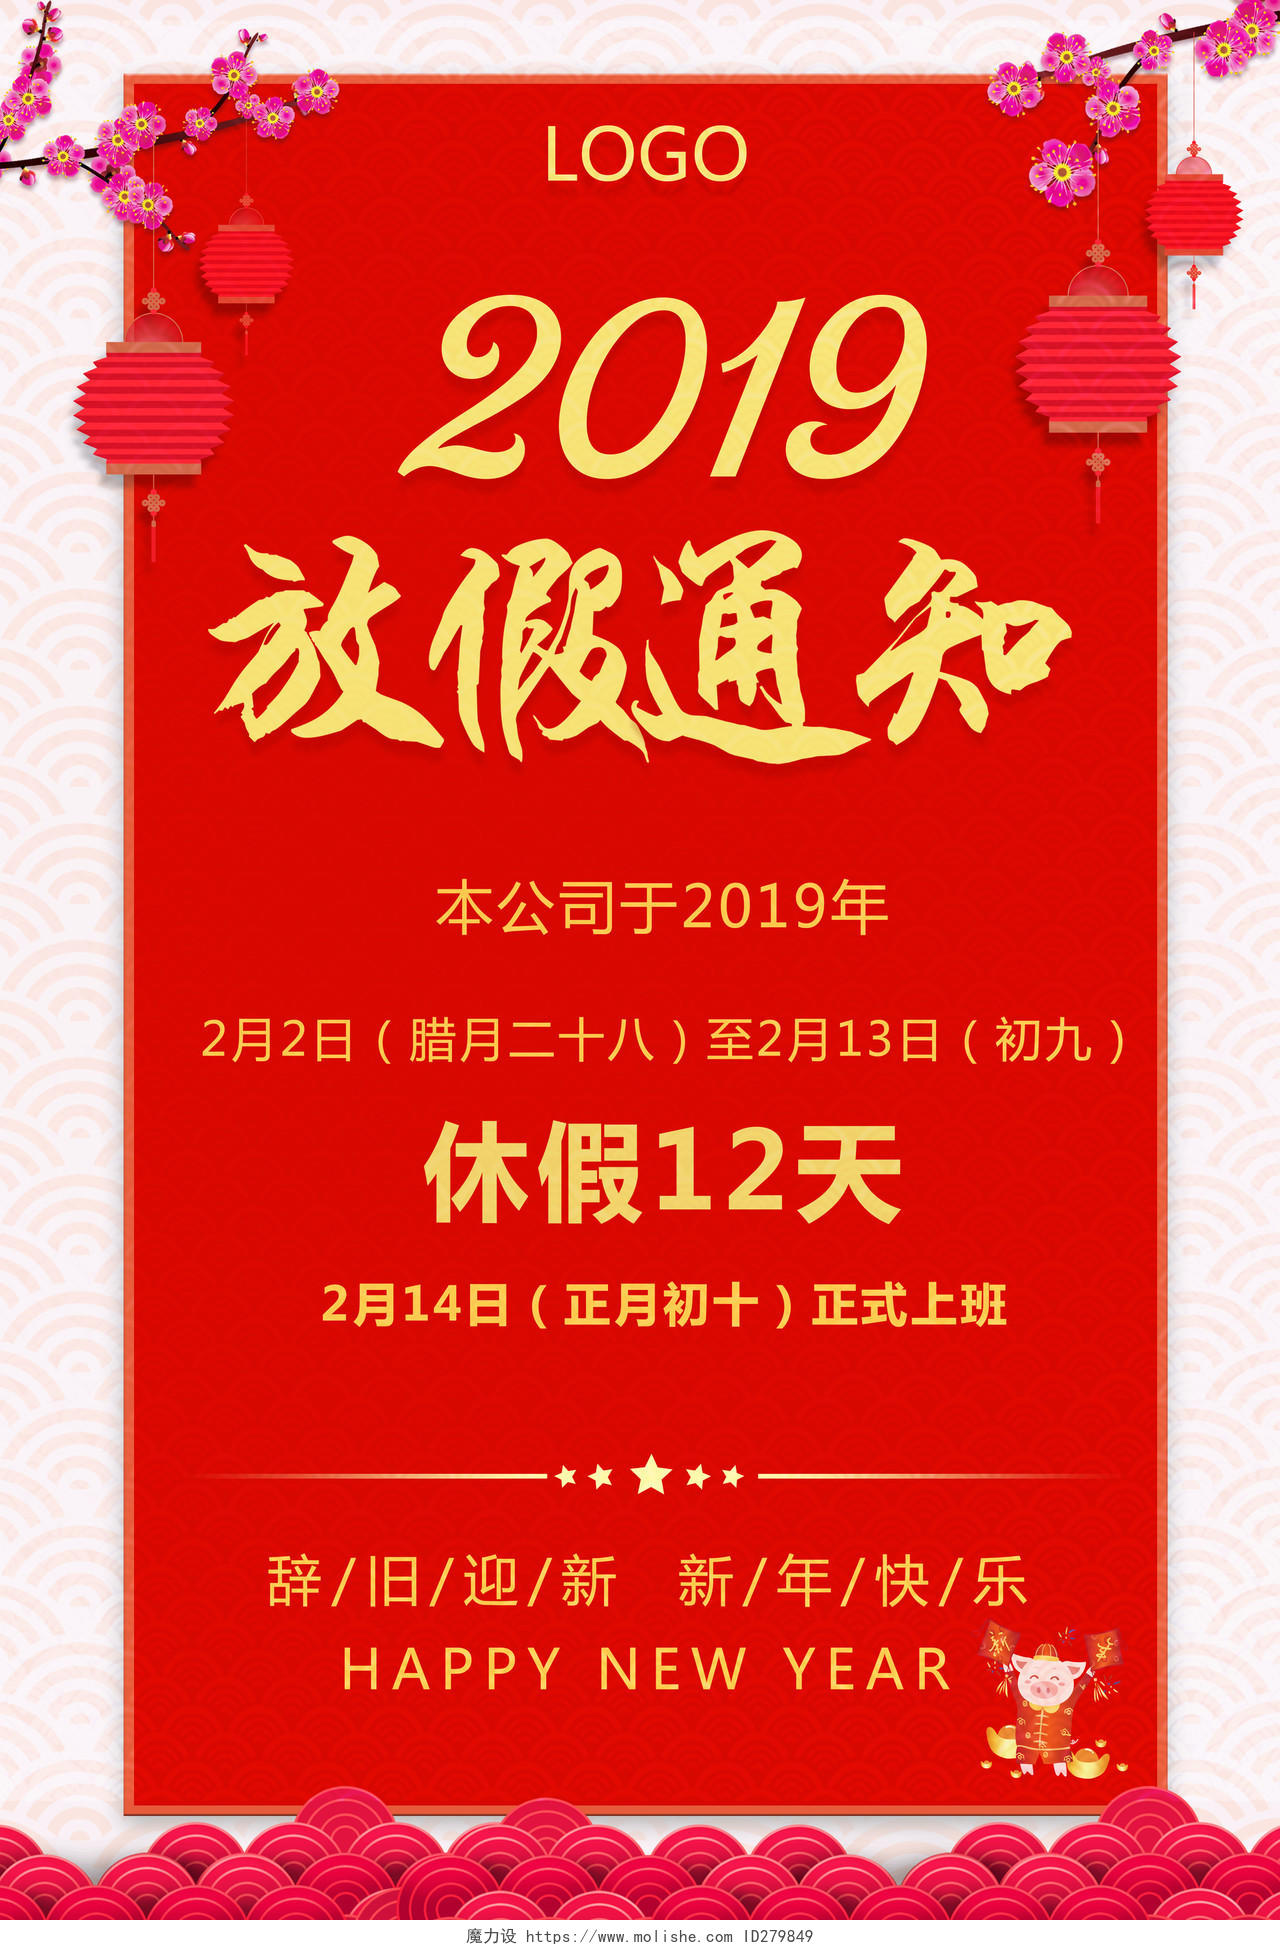 2019年猪年 新春 春节放假通知歇业停业通知